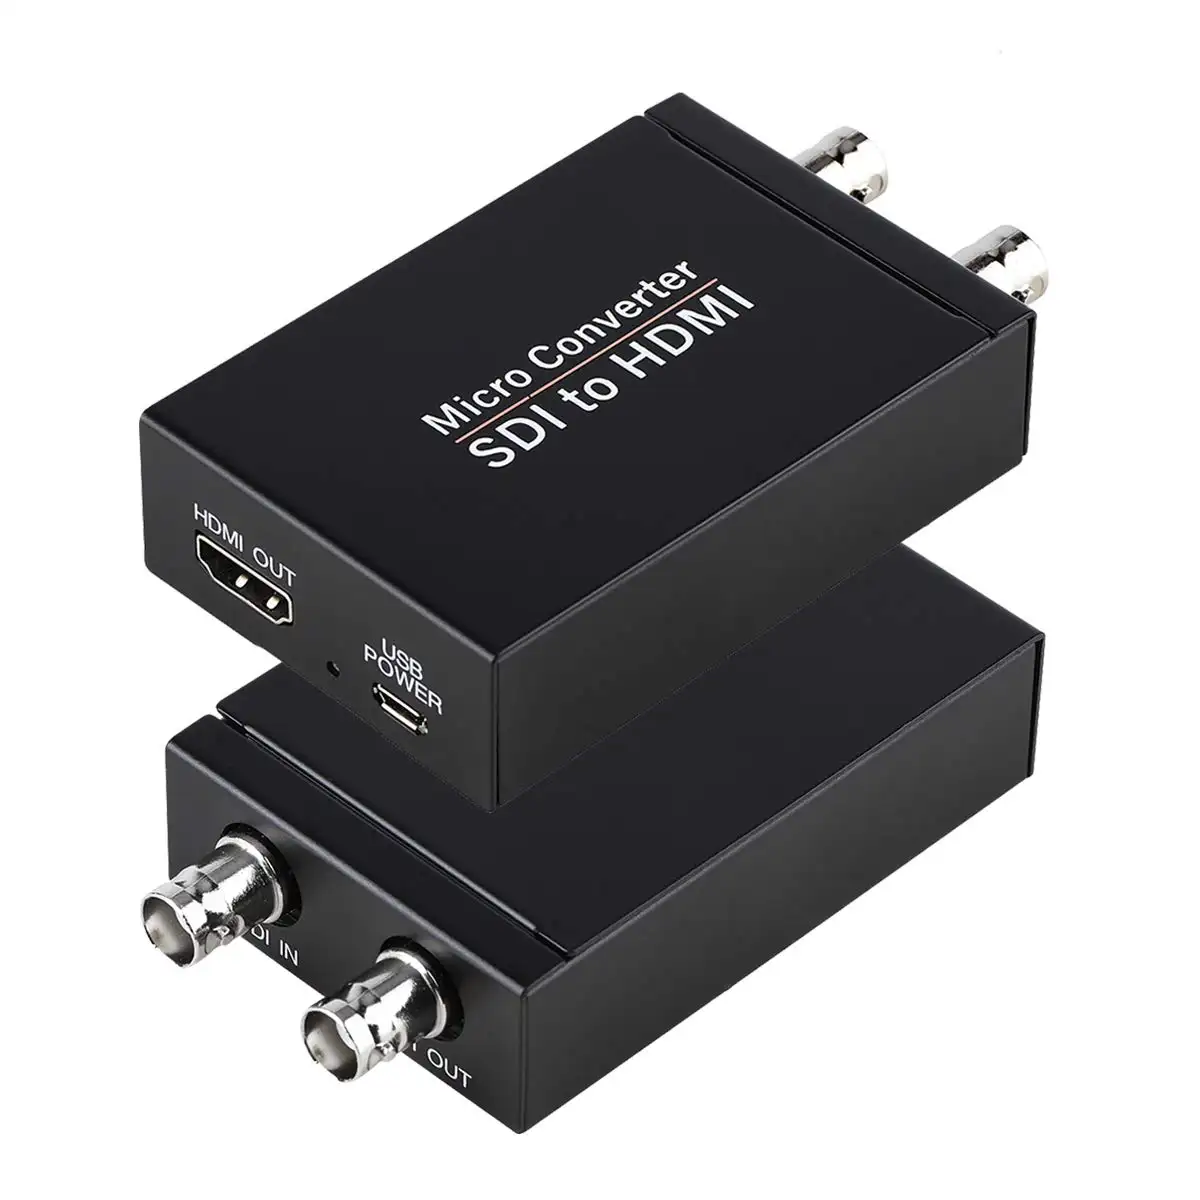 Convertisseur Offre Spéciale SDI vers HDMI SDI Loopout Détection automatique du format Micro convertisseur vidéo SDI vers HDMI Sortie audio et image